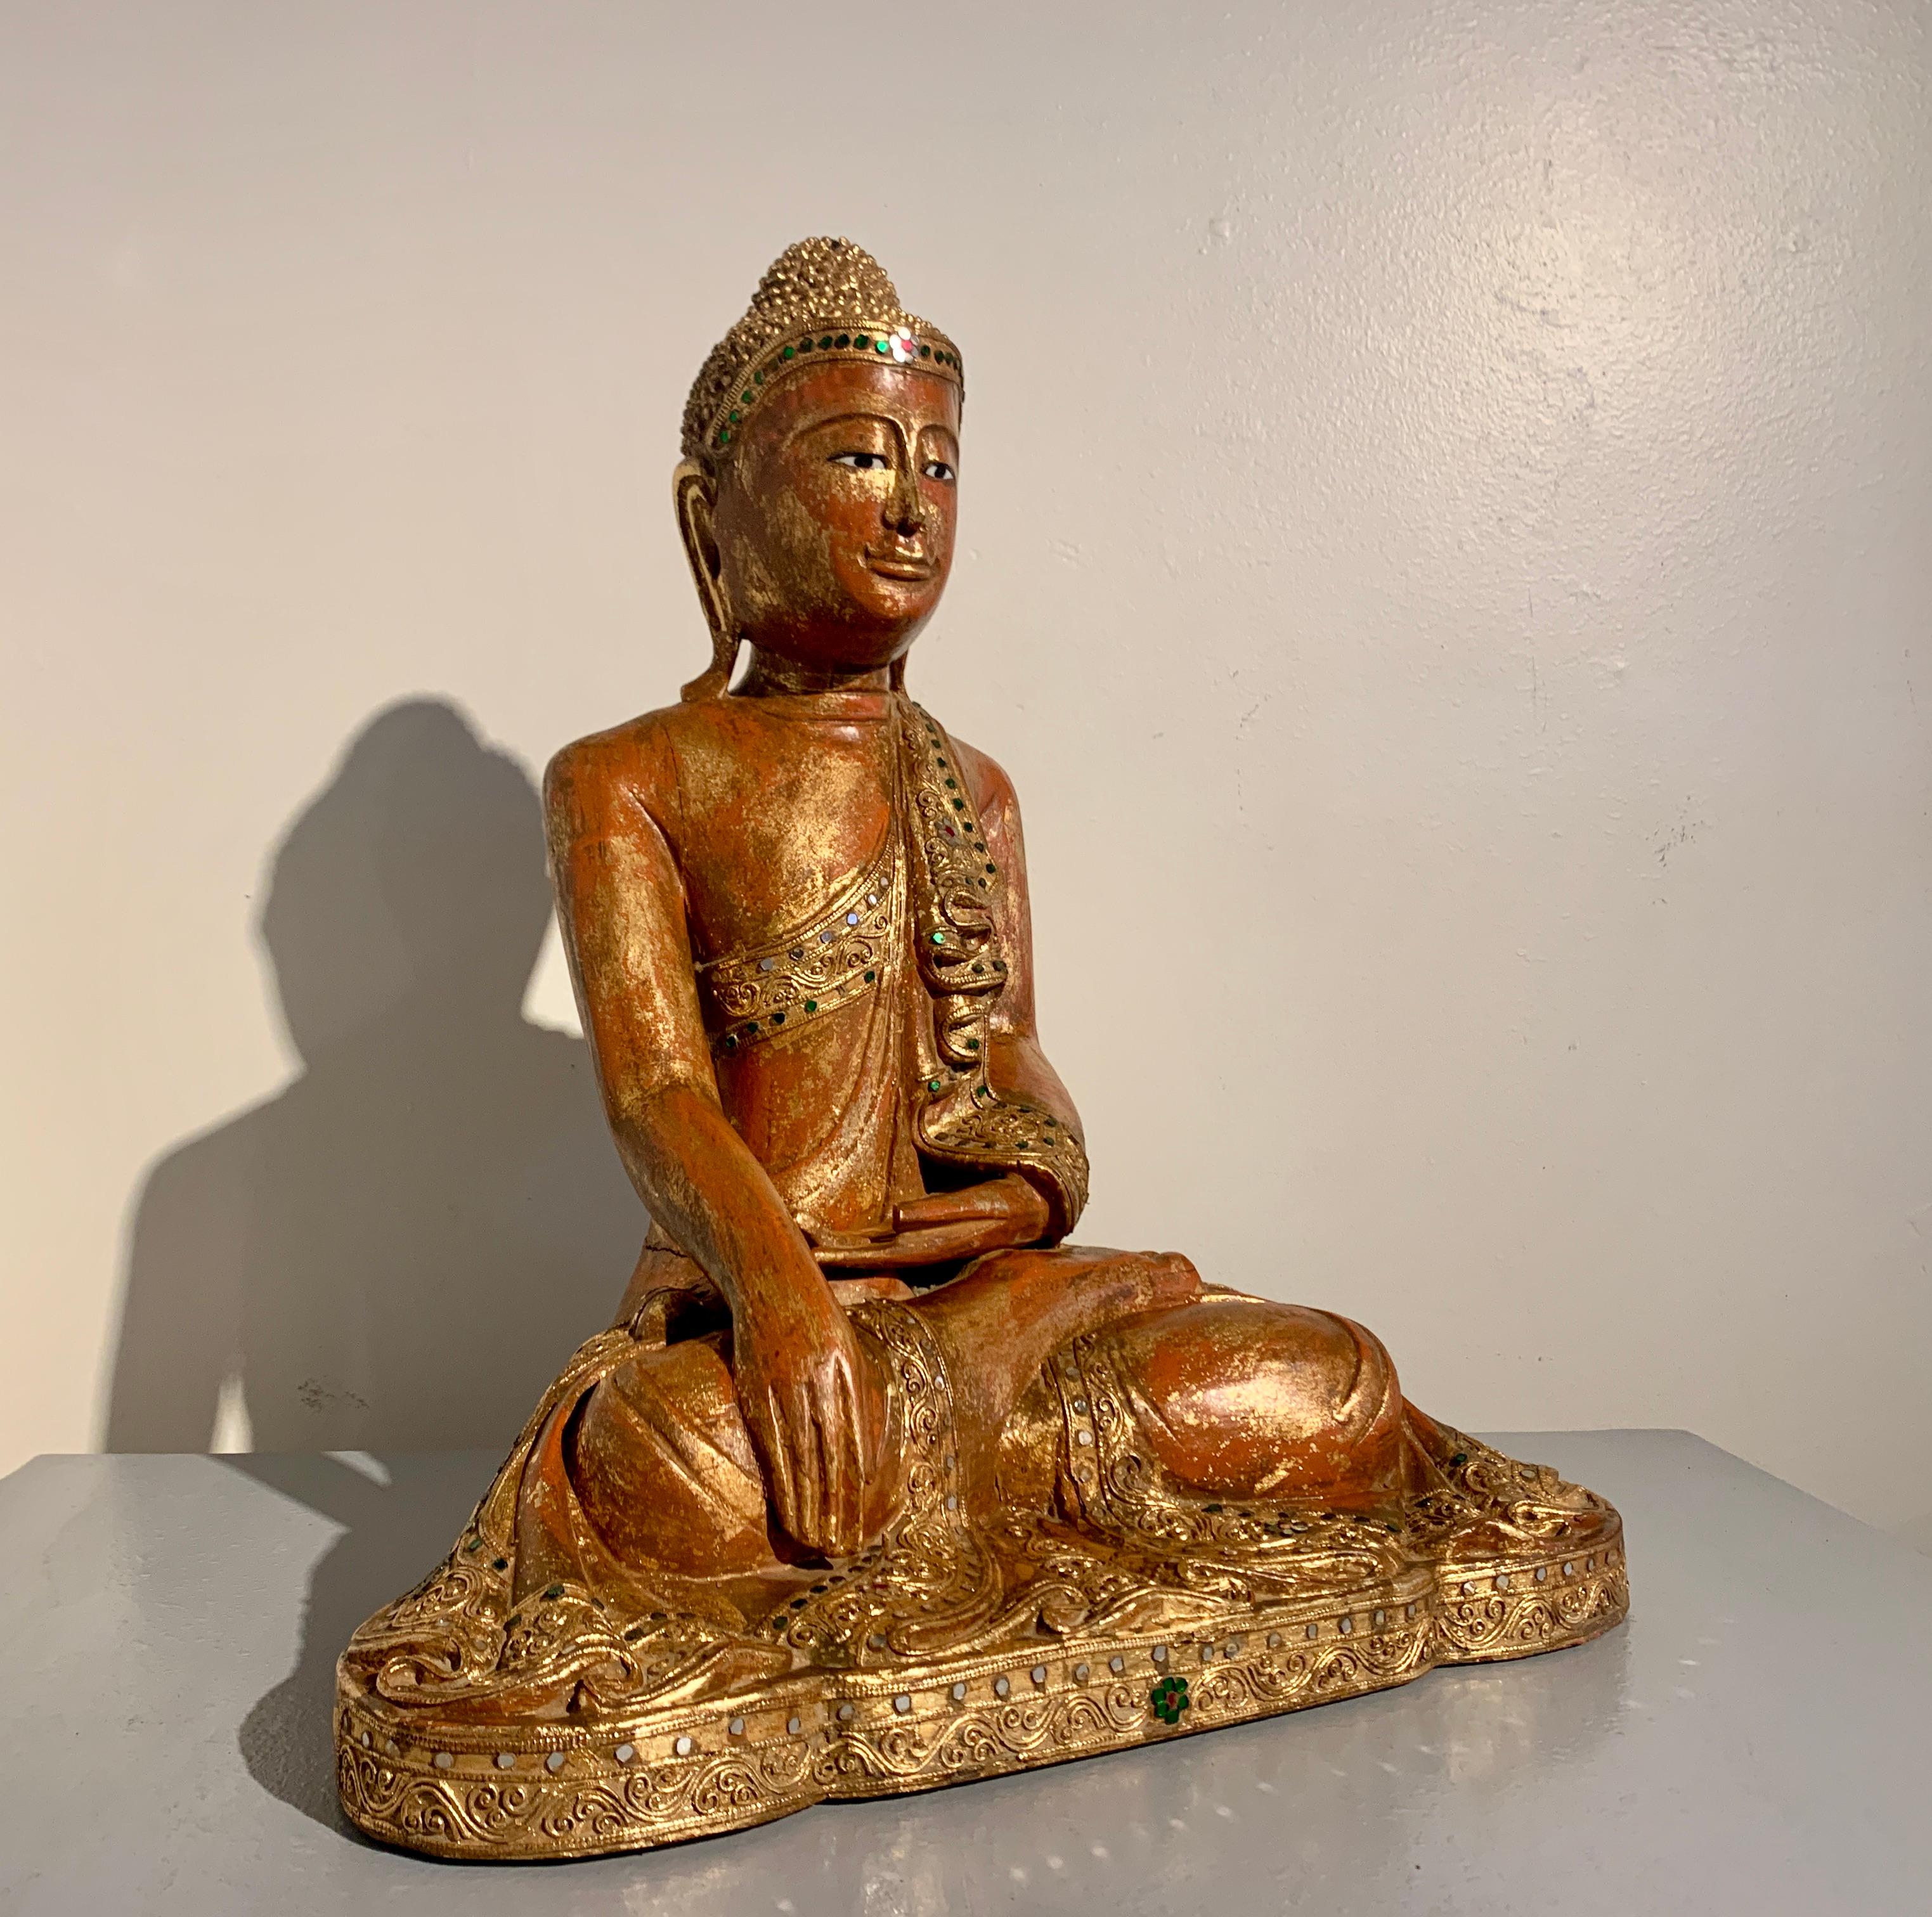 Eine wunderschöne und ruhige birmanische geschnitzte Teakholzfigur eines sitzenden Buddhas, Mandalay-Stil und aus der Zeit, spätes 19. Jahrhundert, Birma (Myanmar).

Dieser elegante Buddha ist auf einem kurzen Sockel im Lotussitz dargestellt, die